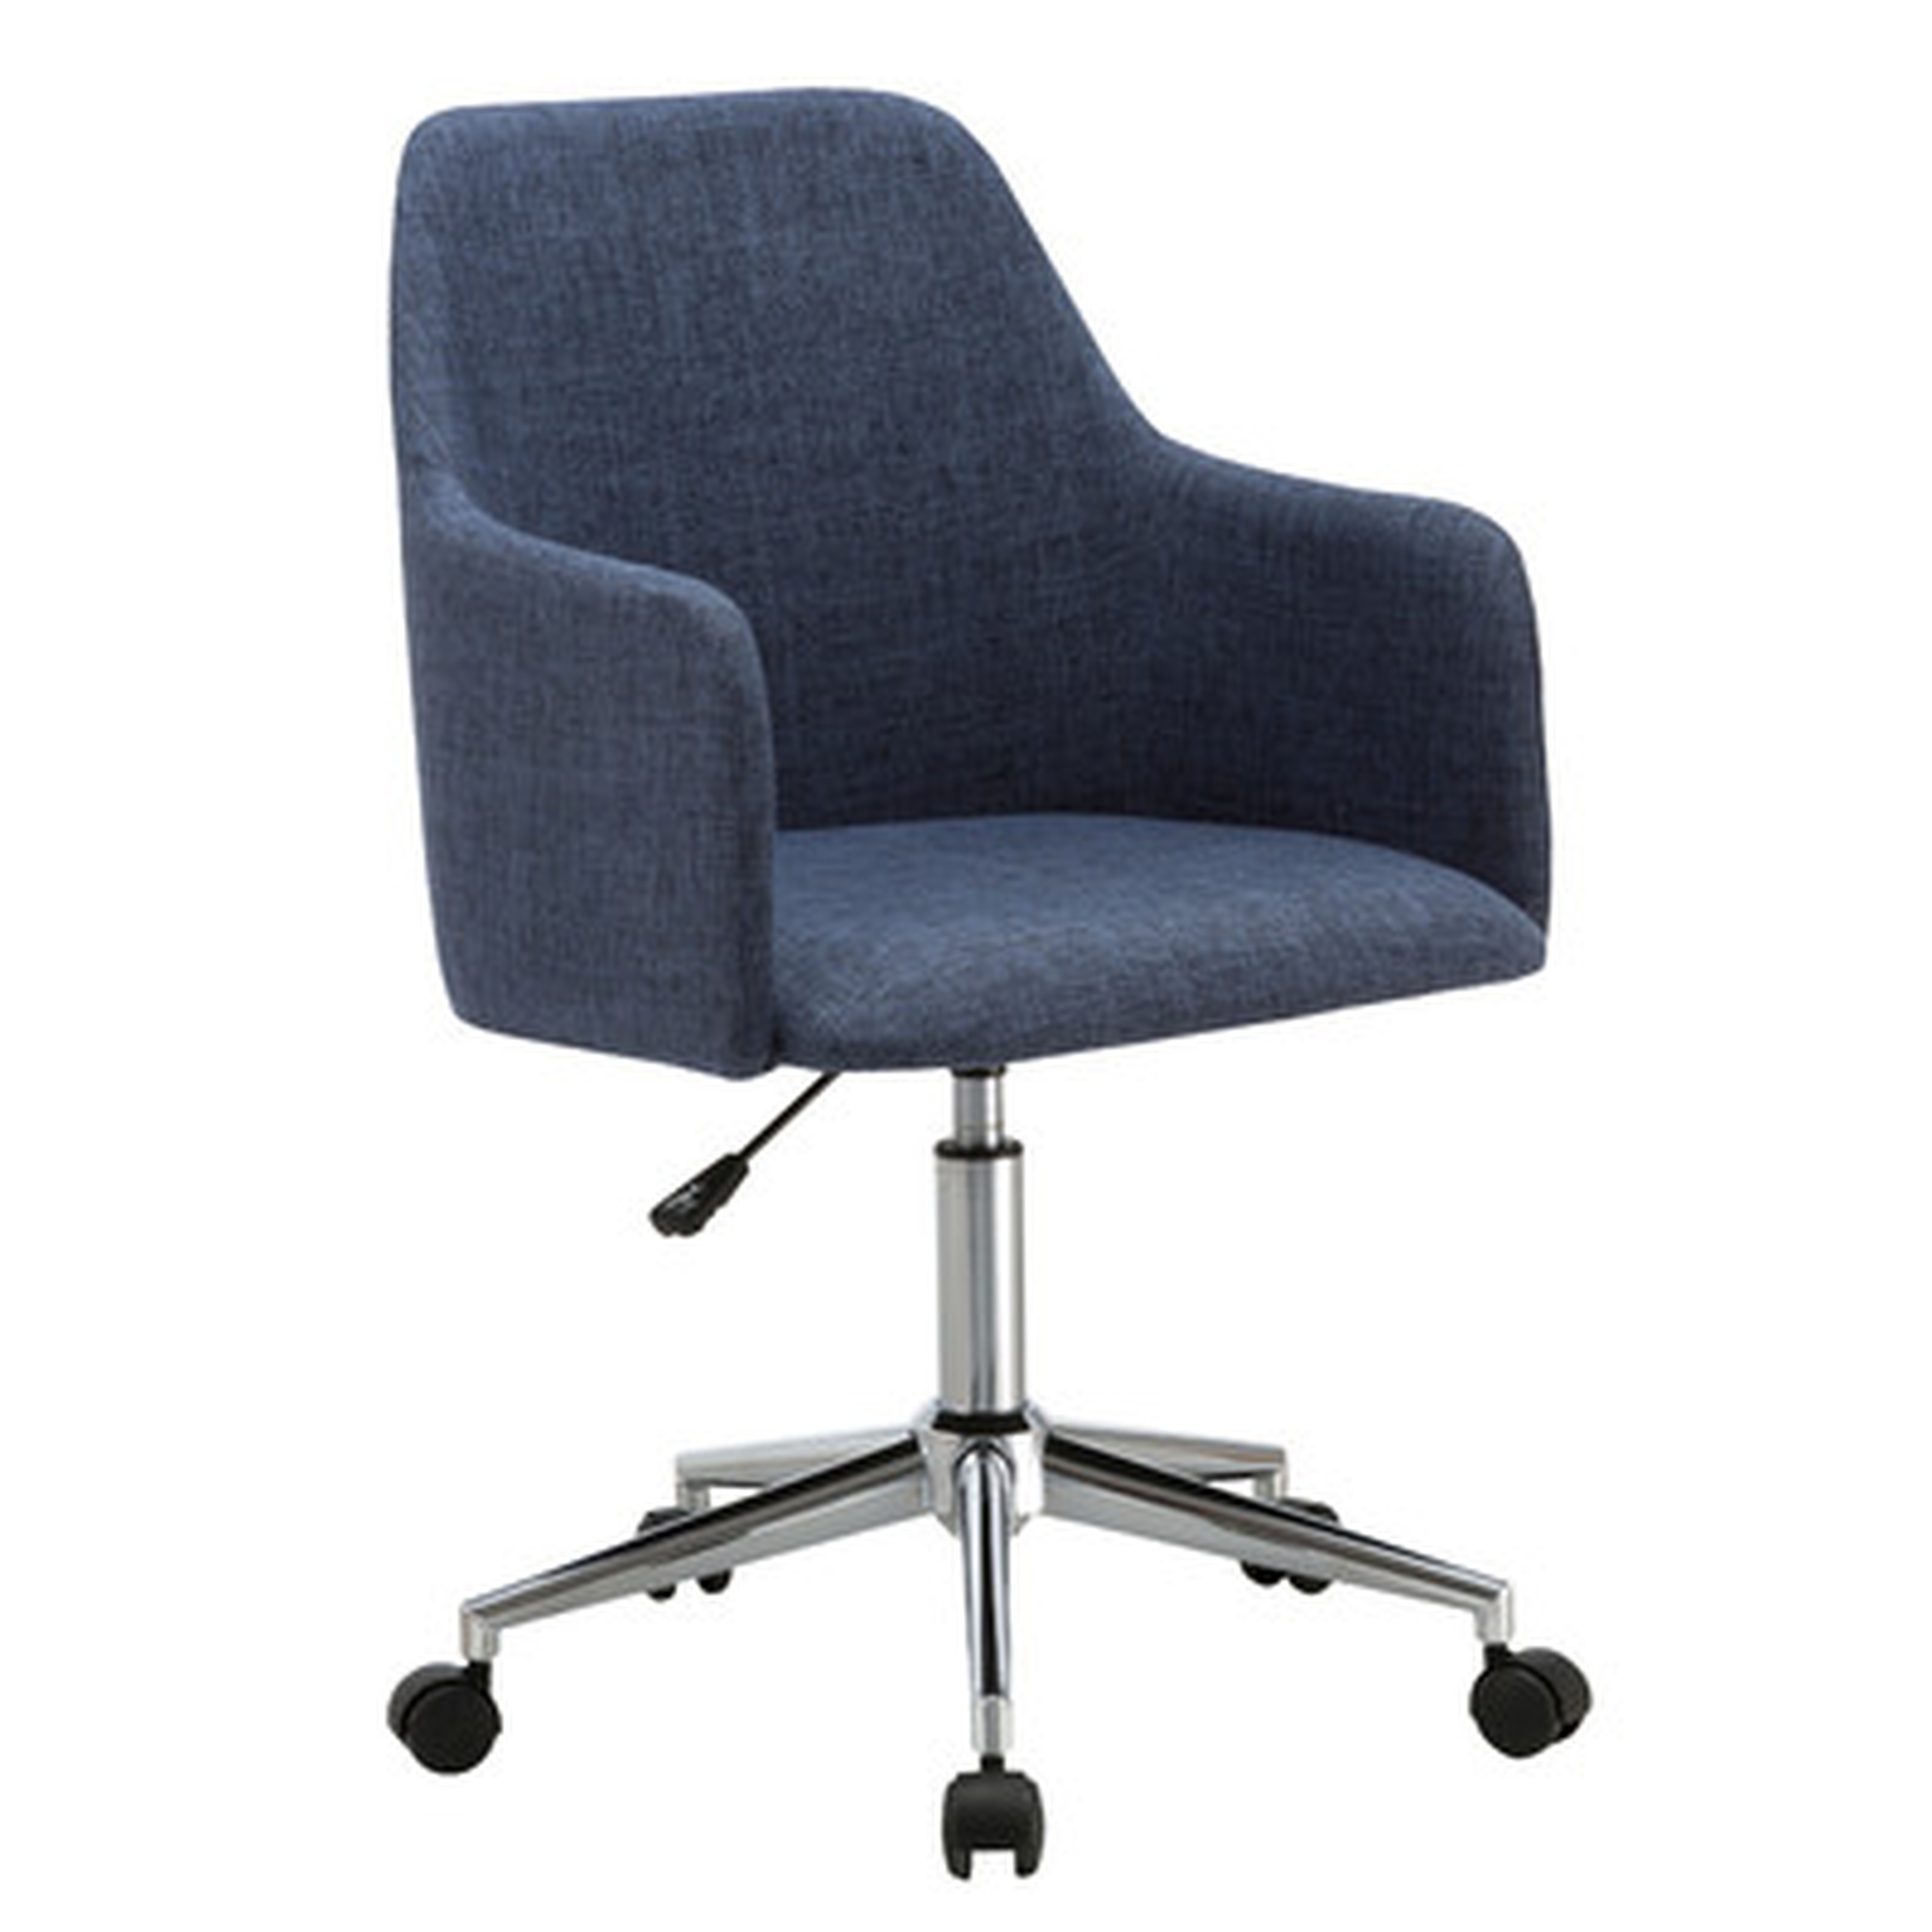 "Duncan Mid-Back Desk Chair" - Wayfair